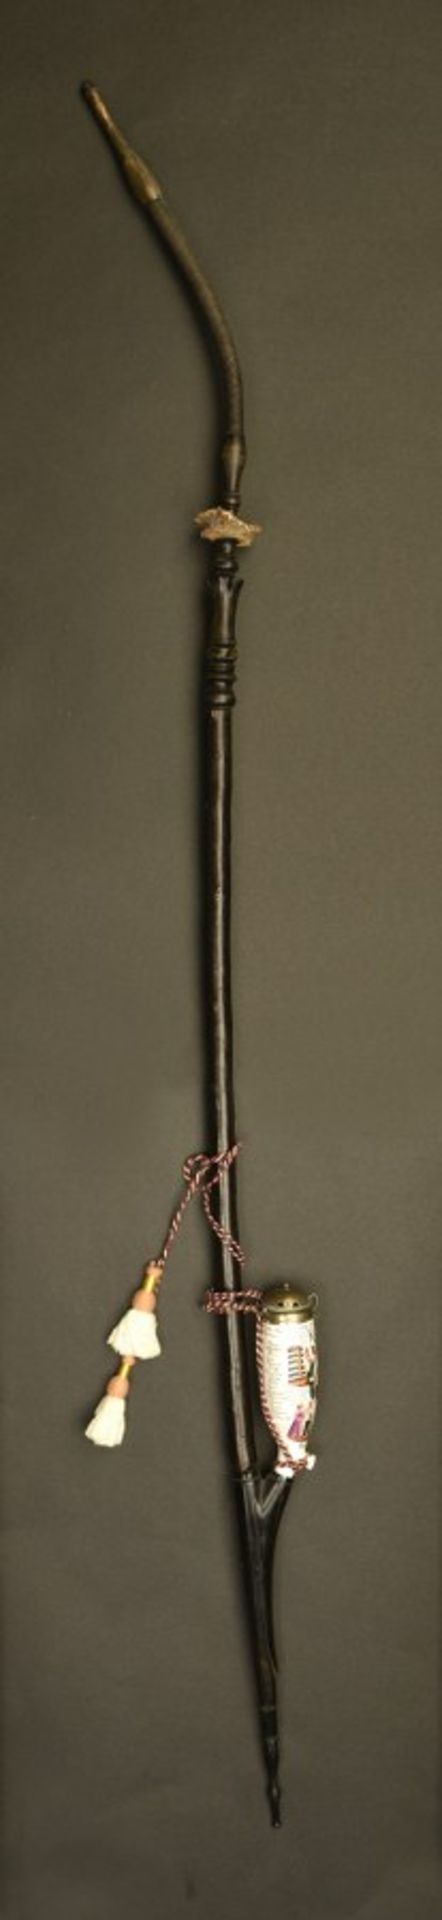 Pipe de réserviste d'un cuirassierEn bois, petit modèle, cordon et glands présents. Fourneau en